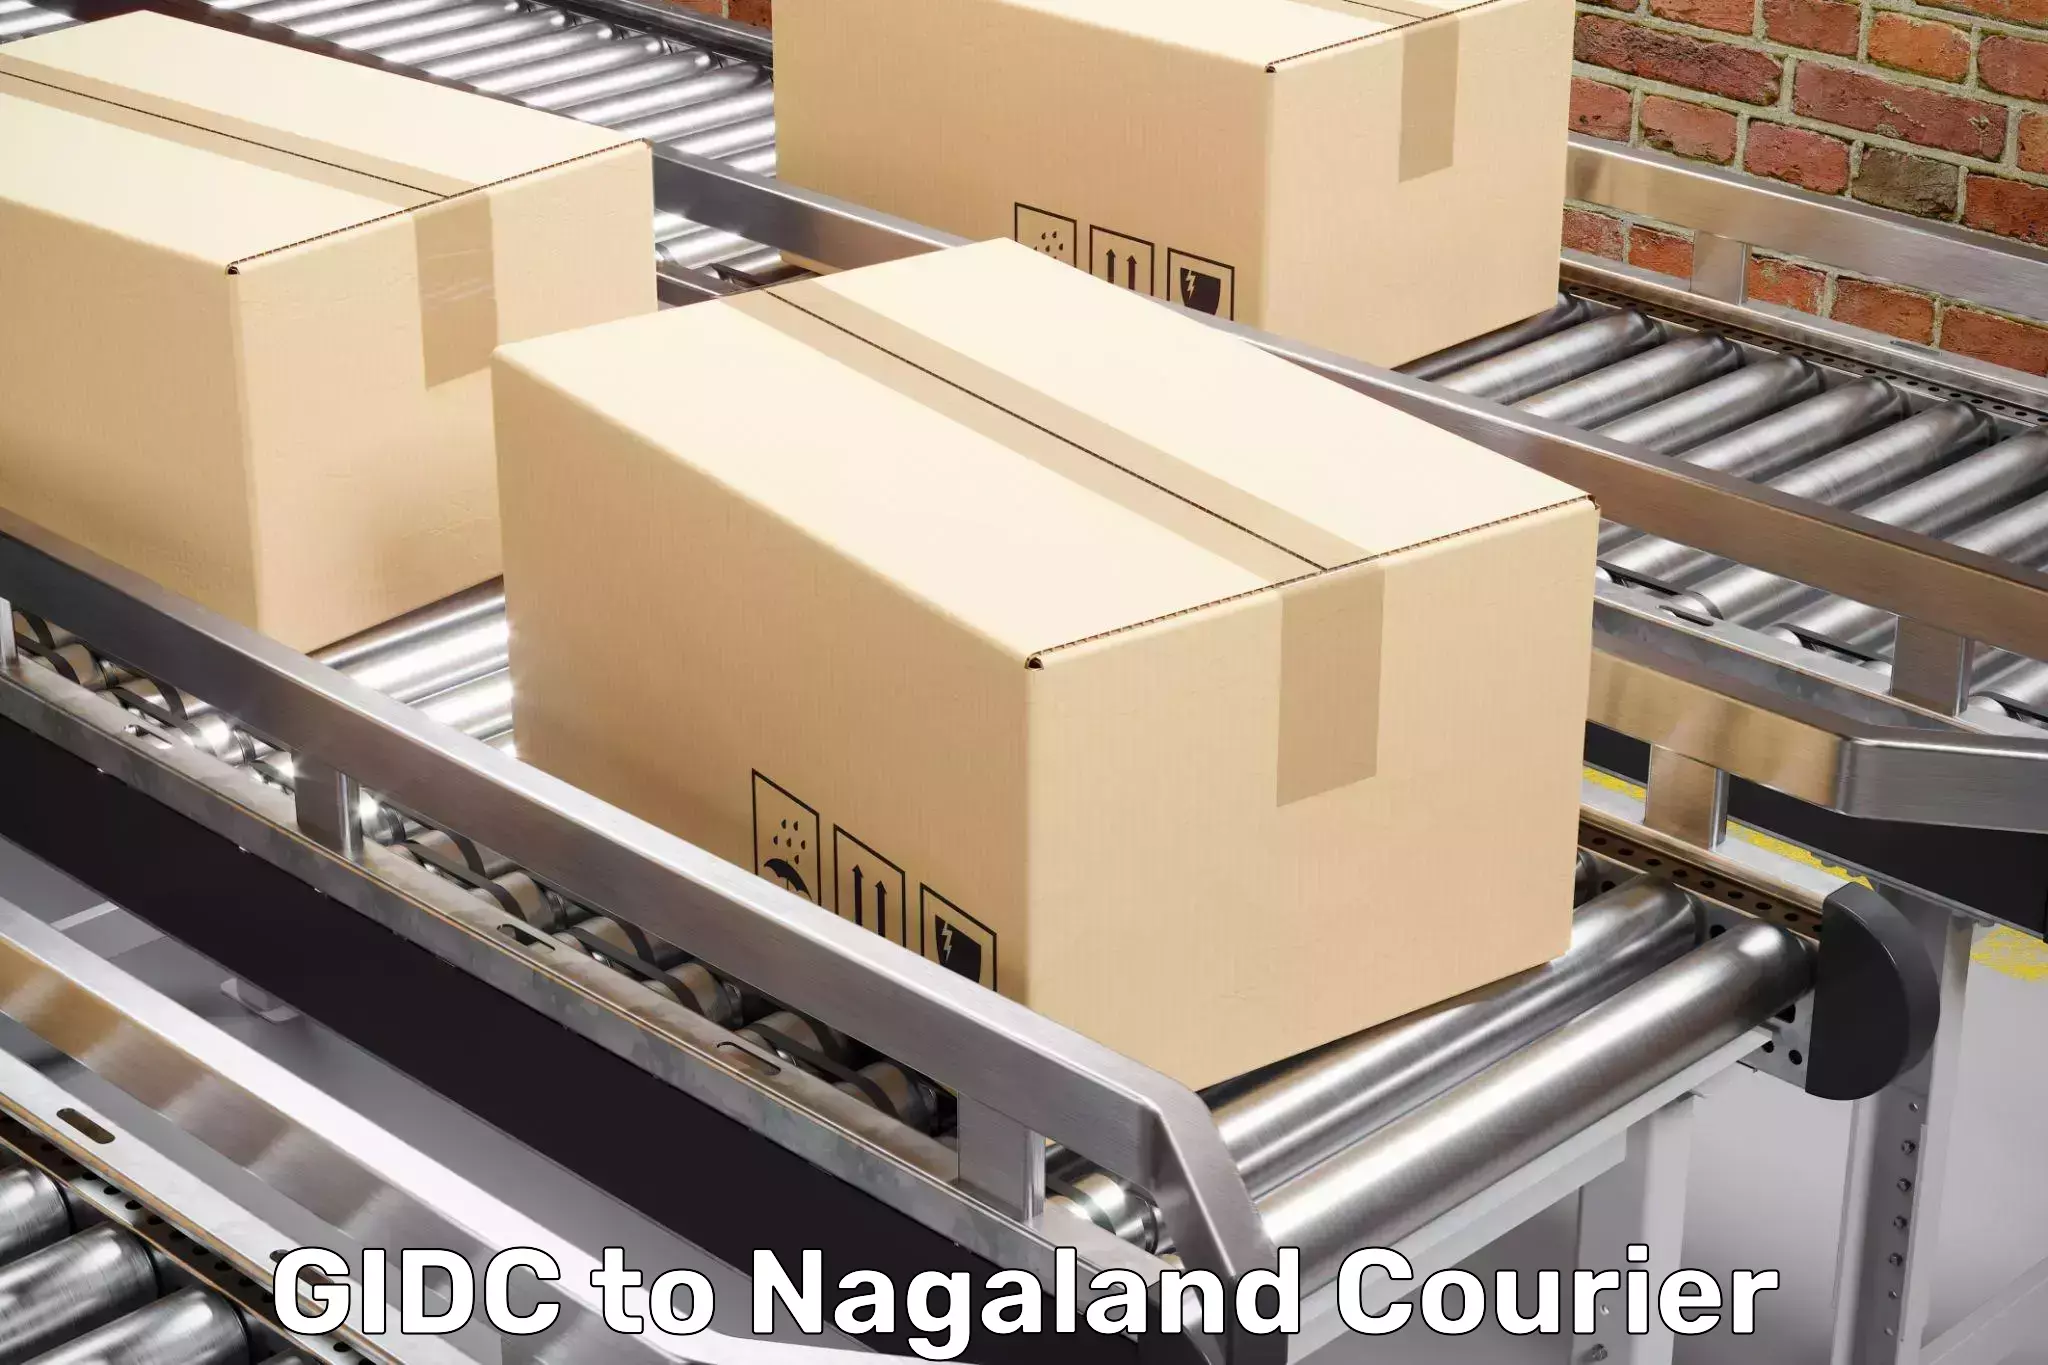 Door-to-door relocation services GIDC to Nagaland